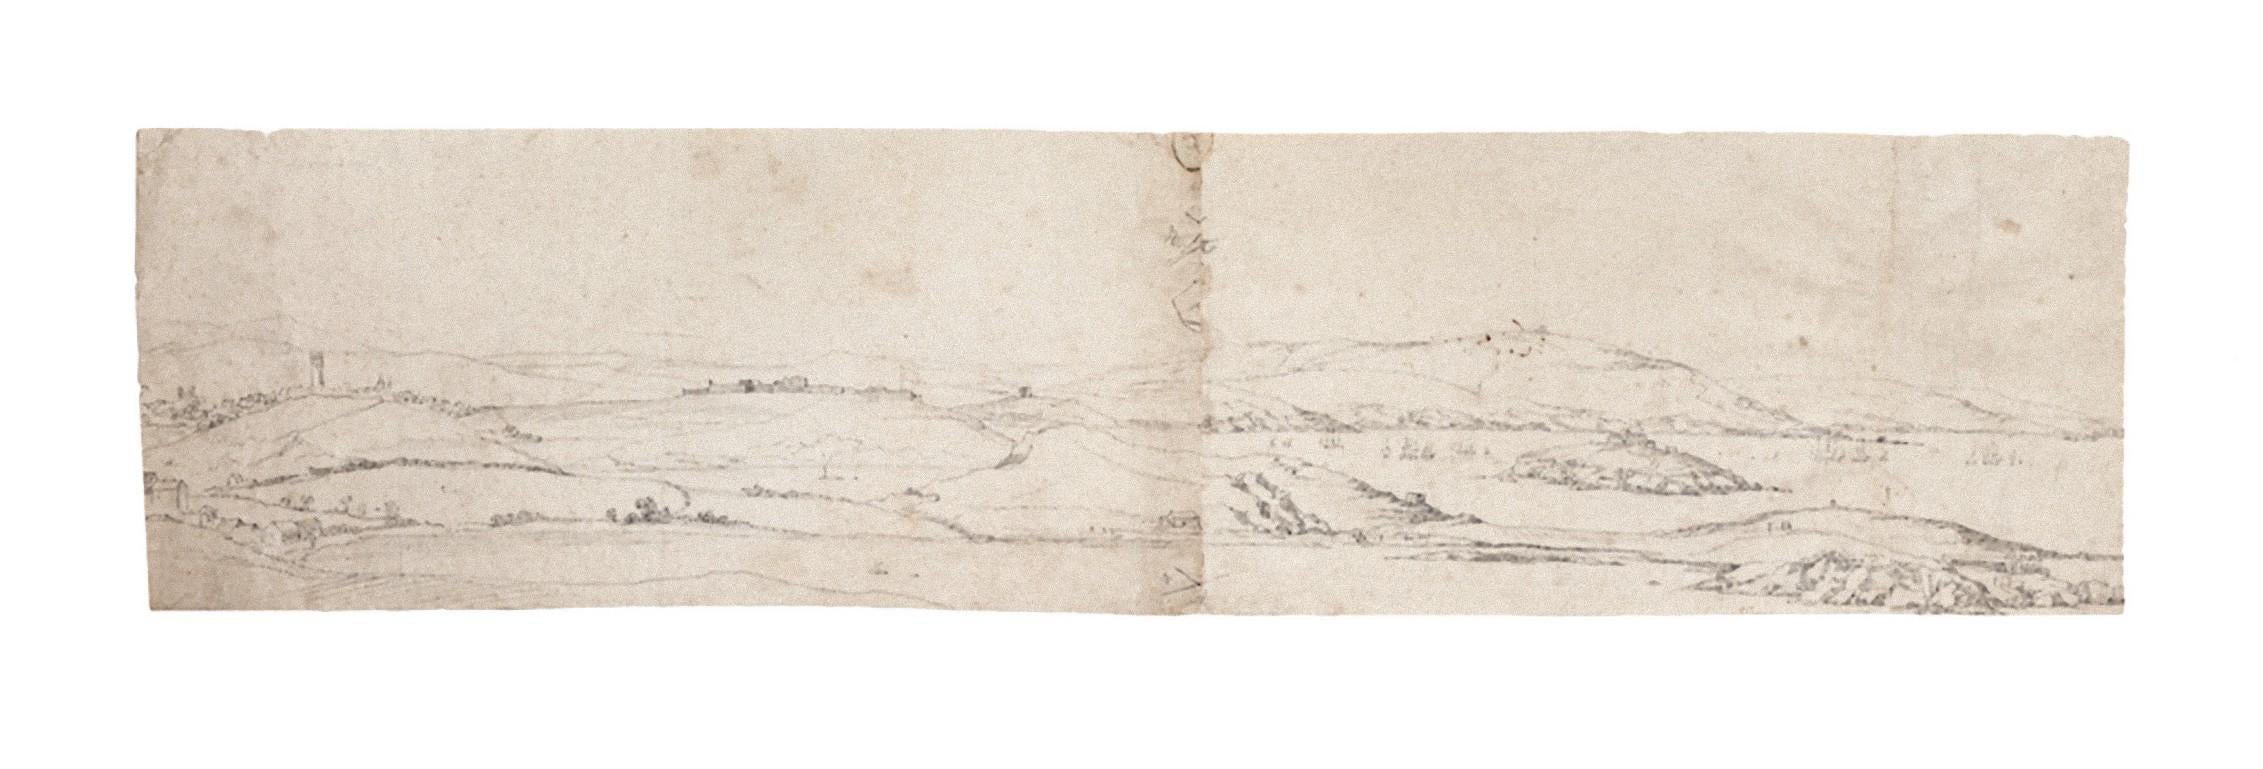 Jan Peeter Verdussen Figurative Art - Landscape - Original Pencil on Paper by J. P. Verdussen - 18th Century